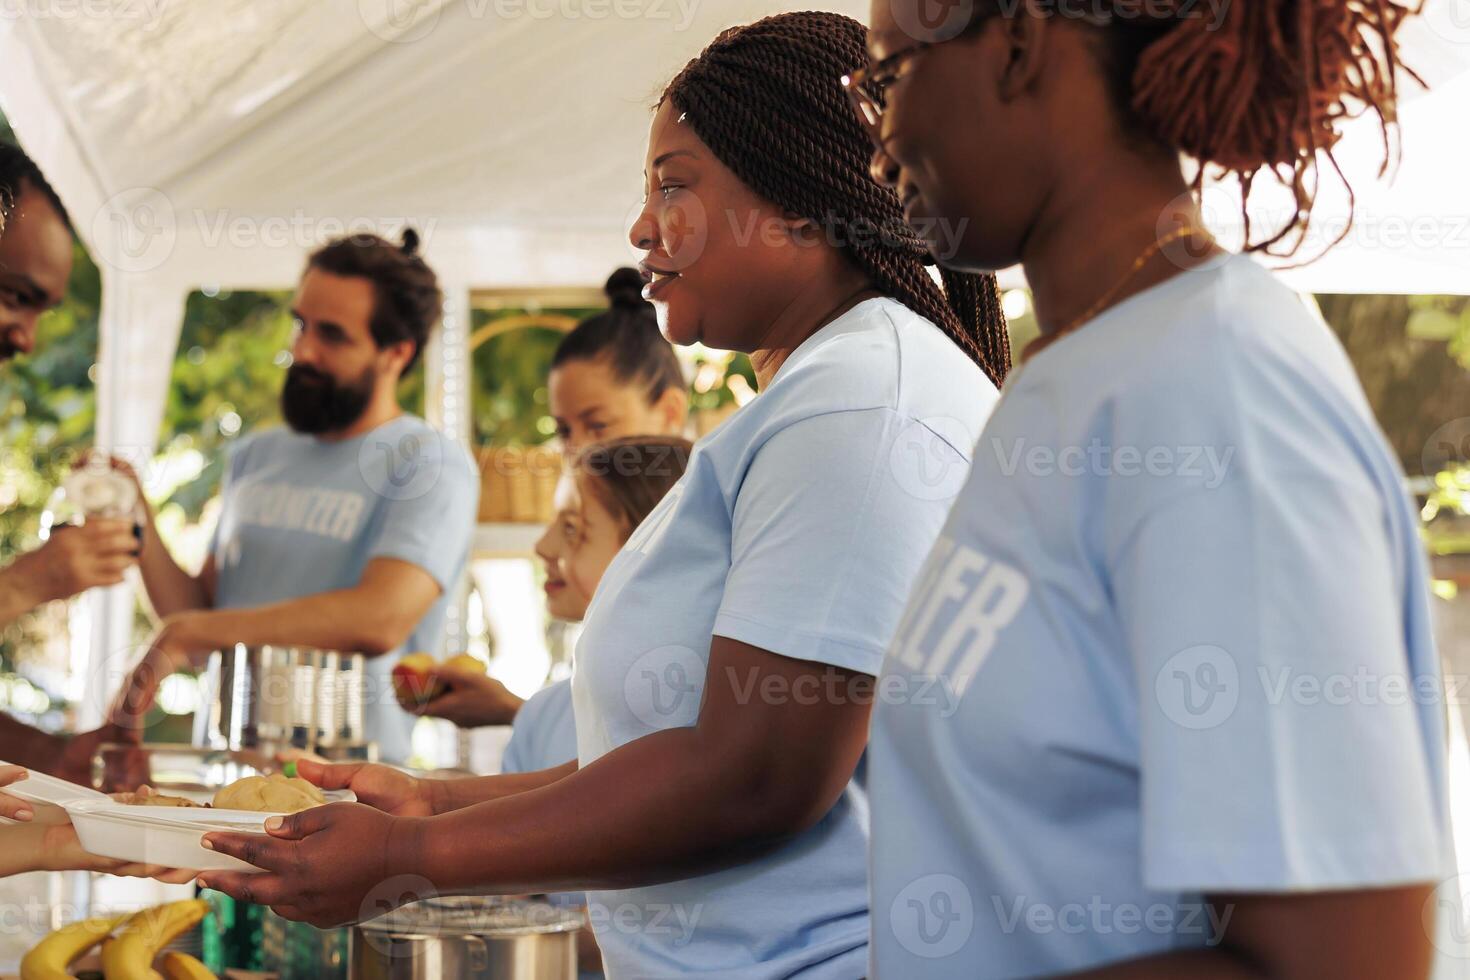 frivillig multietnisk människor distribuerar behövs Produkter och fri måltider till de hungrig, demonstrera välgörenhet i hjälp de mindre privilegierad. ideellt utomhus- mat Bank tjänande varm mat till de behövande. foto